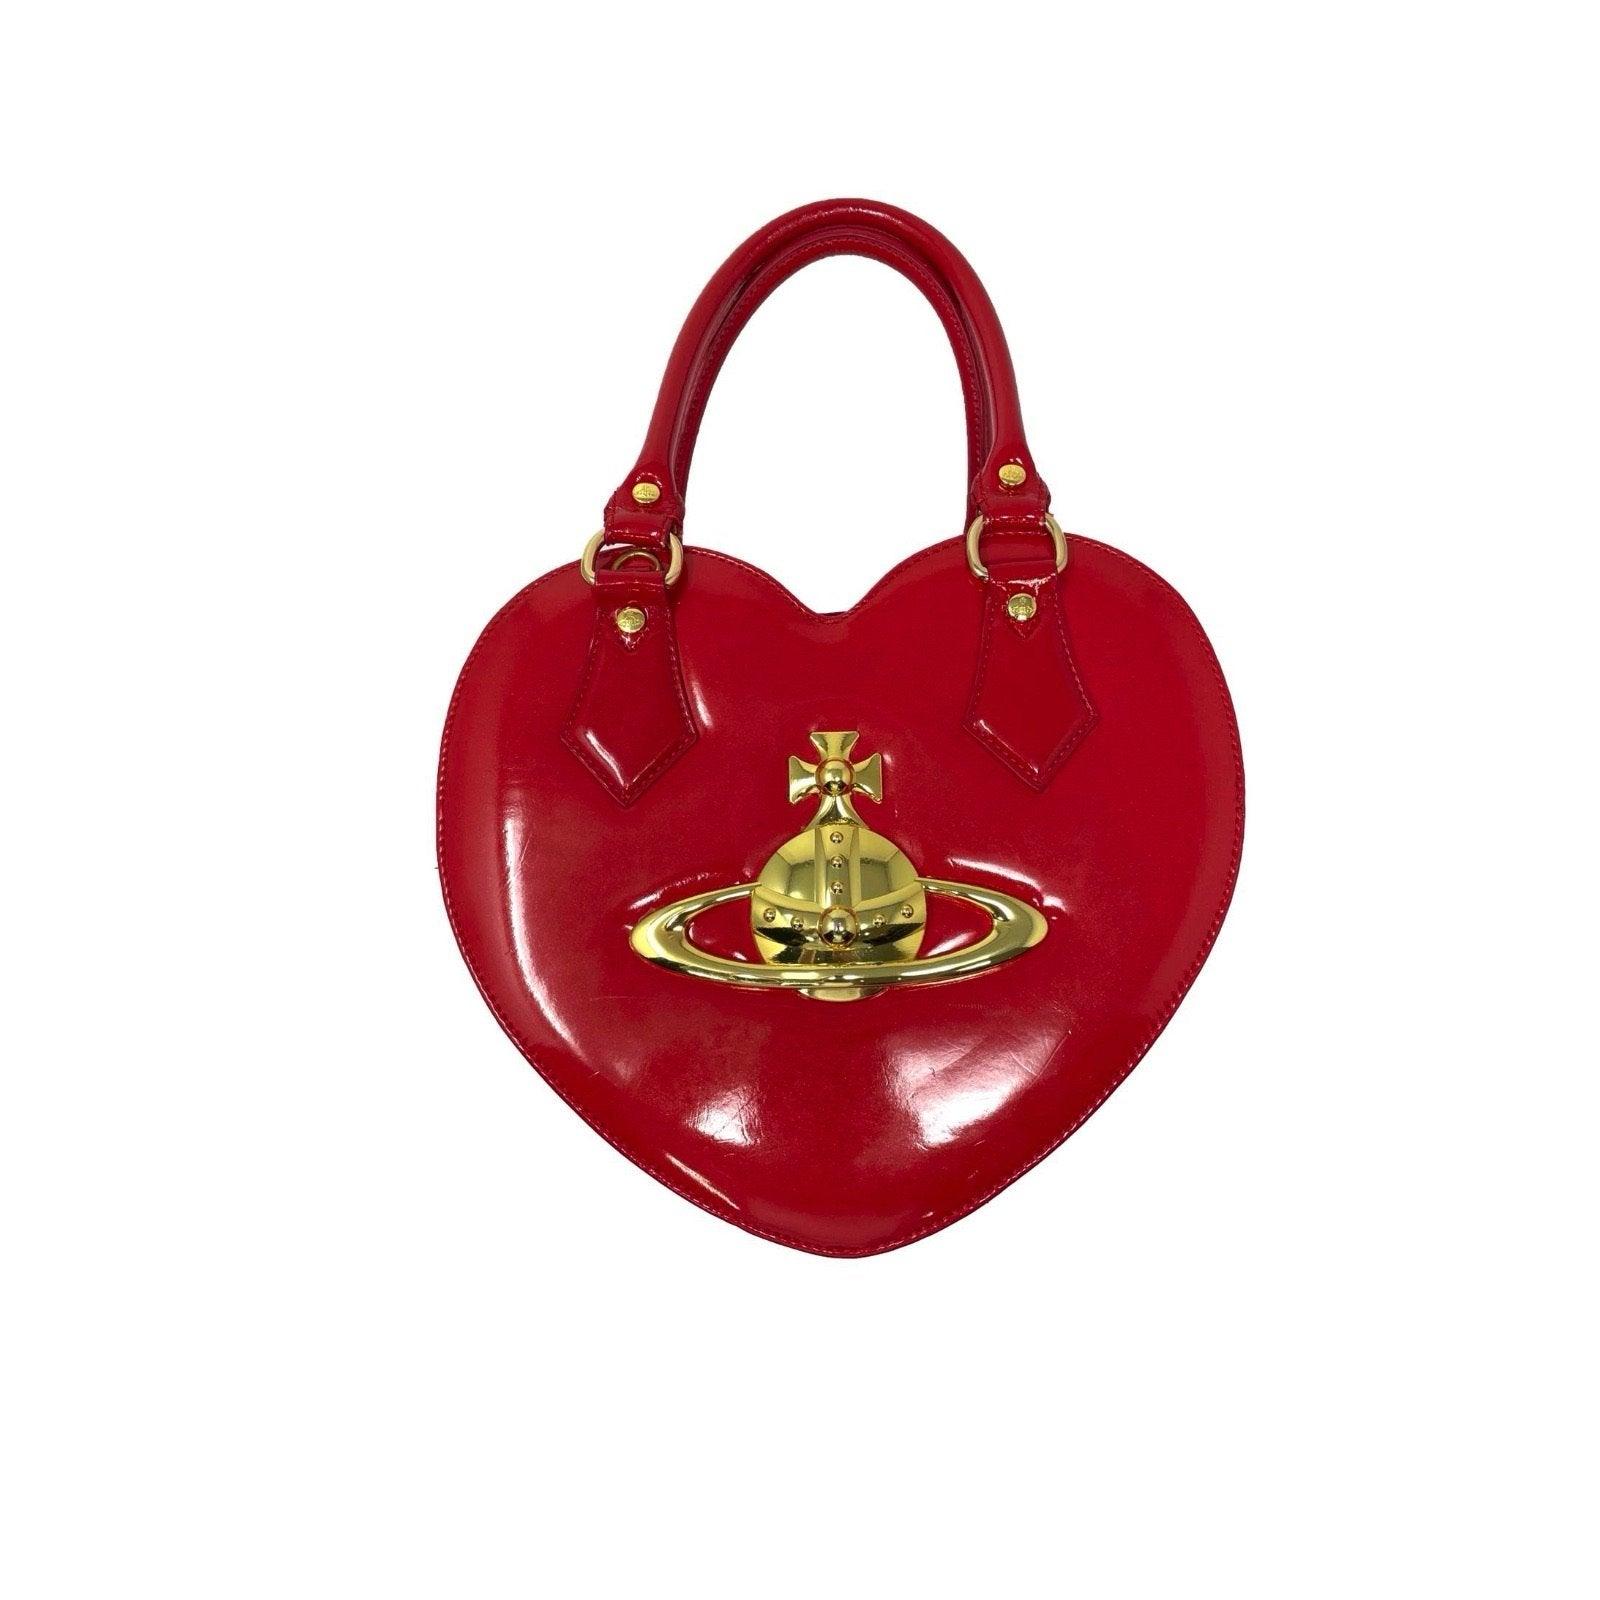 Vivienne Westwood Red Heart Bag - Handbags